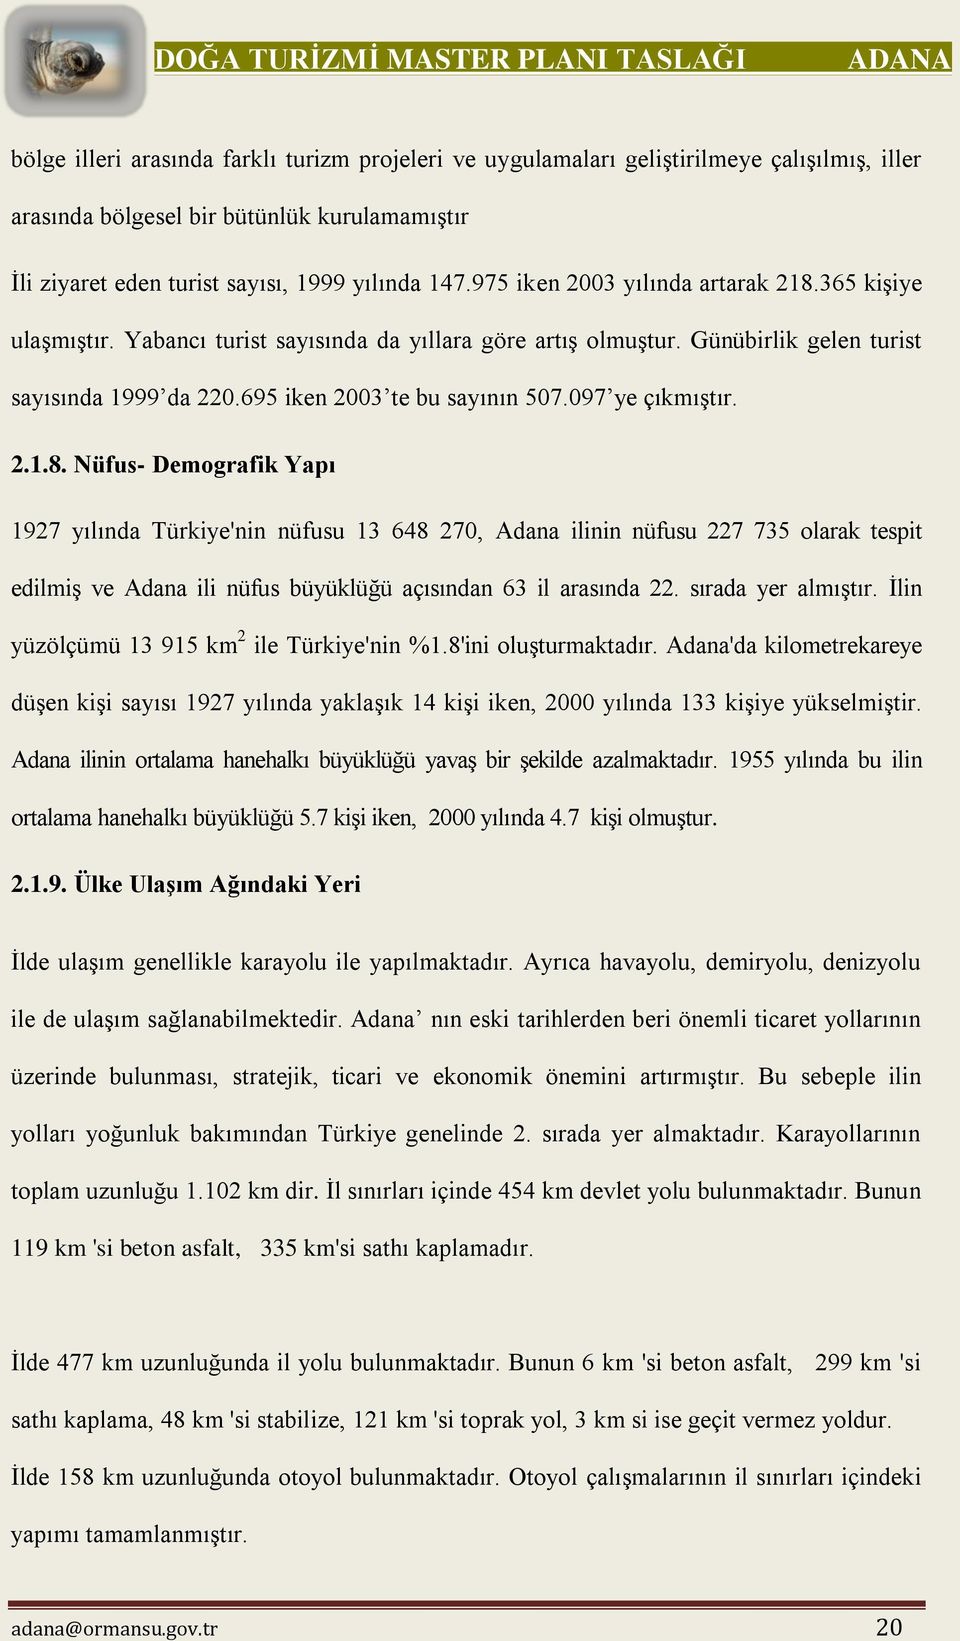 097 ye çıkmıştır. 2.1.8. Nüfus- Demografik Yapı 1927 yılında Türkiye'nin nüfusu 13 648 270, Adana ilinin nüfusu 227 735 olarak tespit edilmiş ve Adana ili nüfus büyüklüğü açısından 63 il arasında 22.